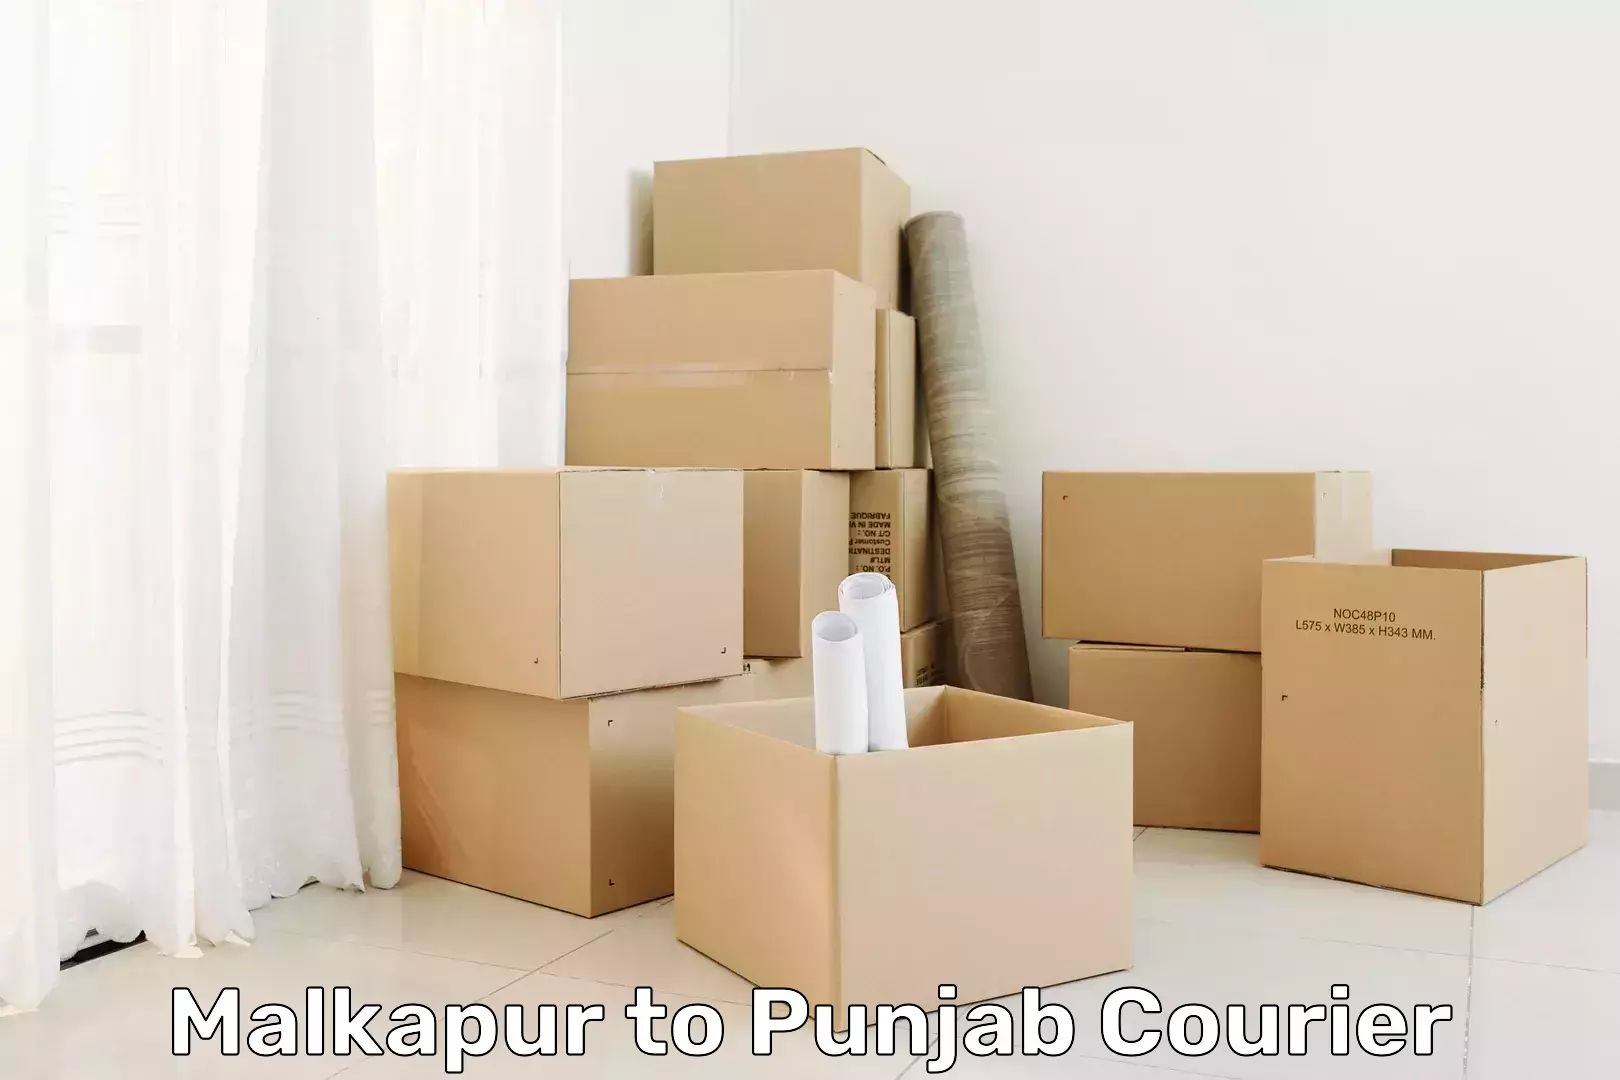 Return courier service in Malkapur to Sirhind Fatehgarh